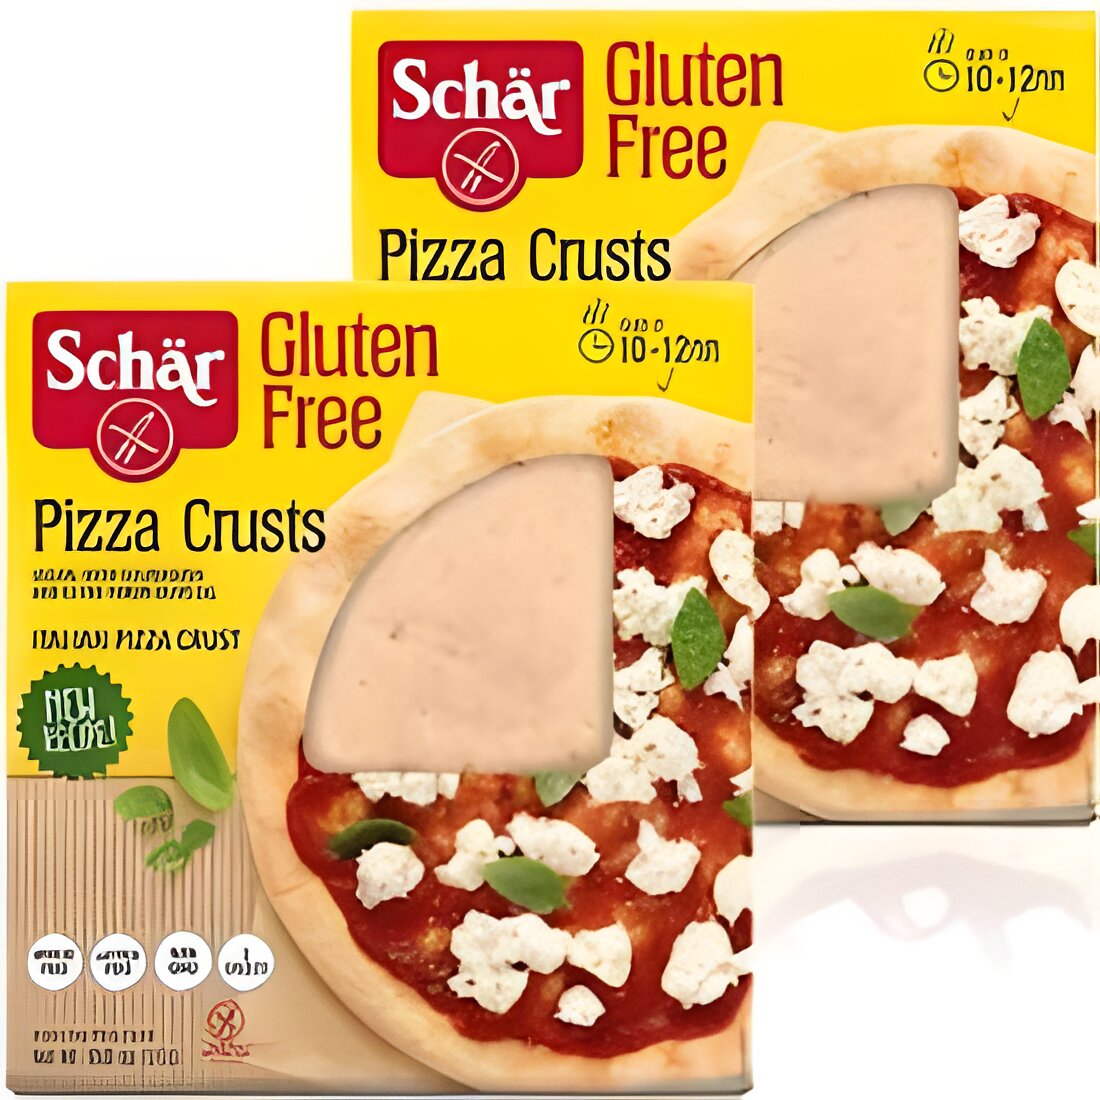 Free Schar Gluten Free Pizza Crust